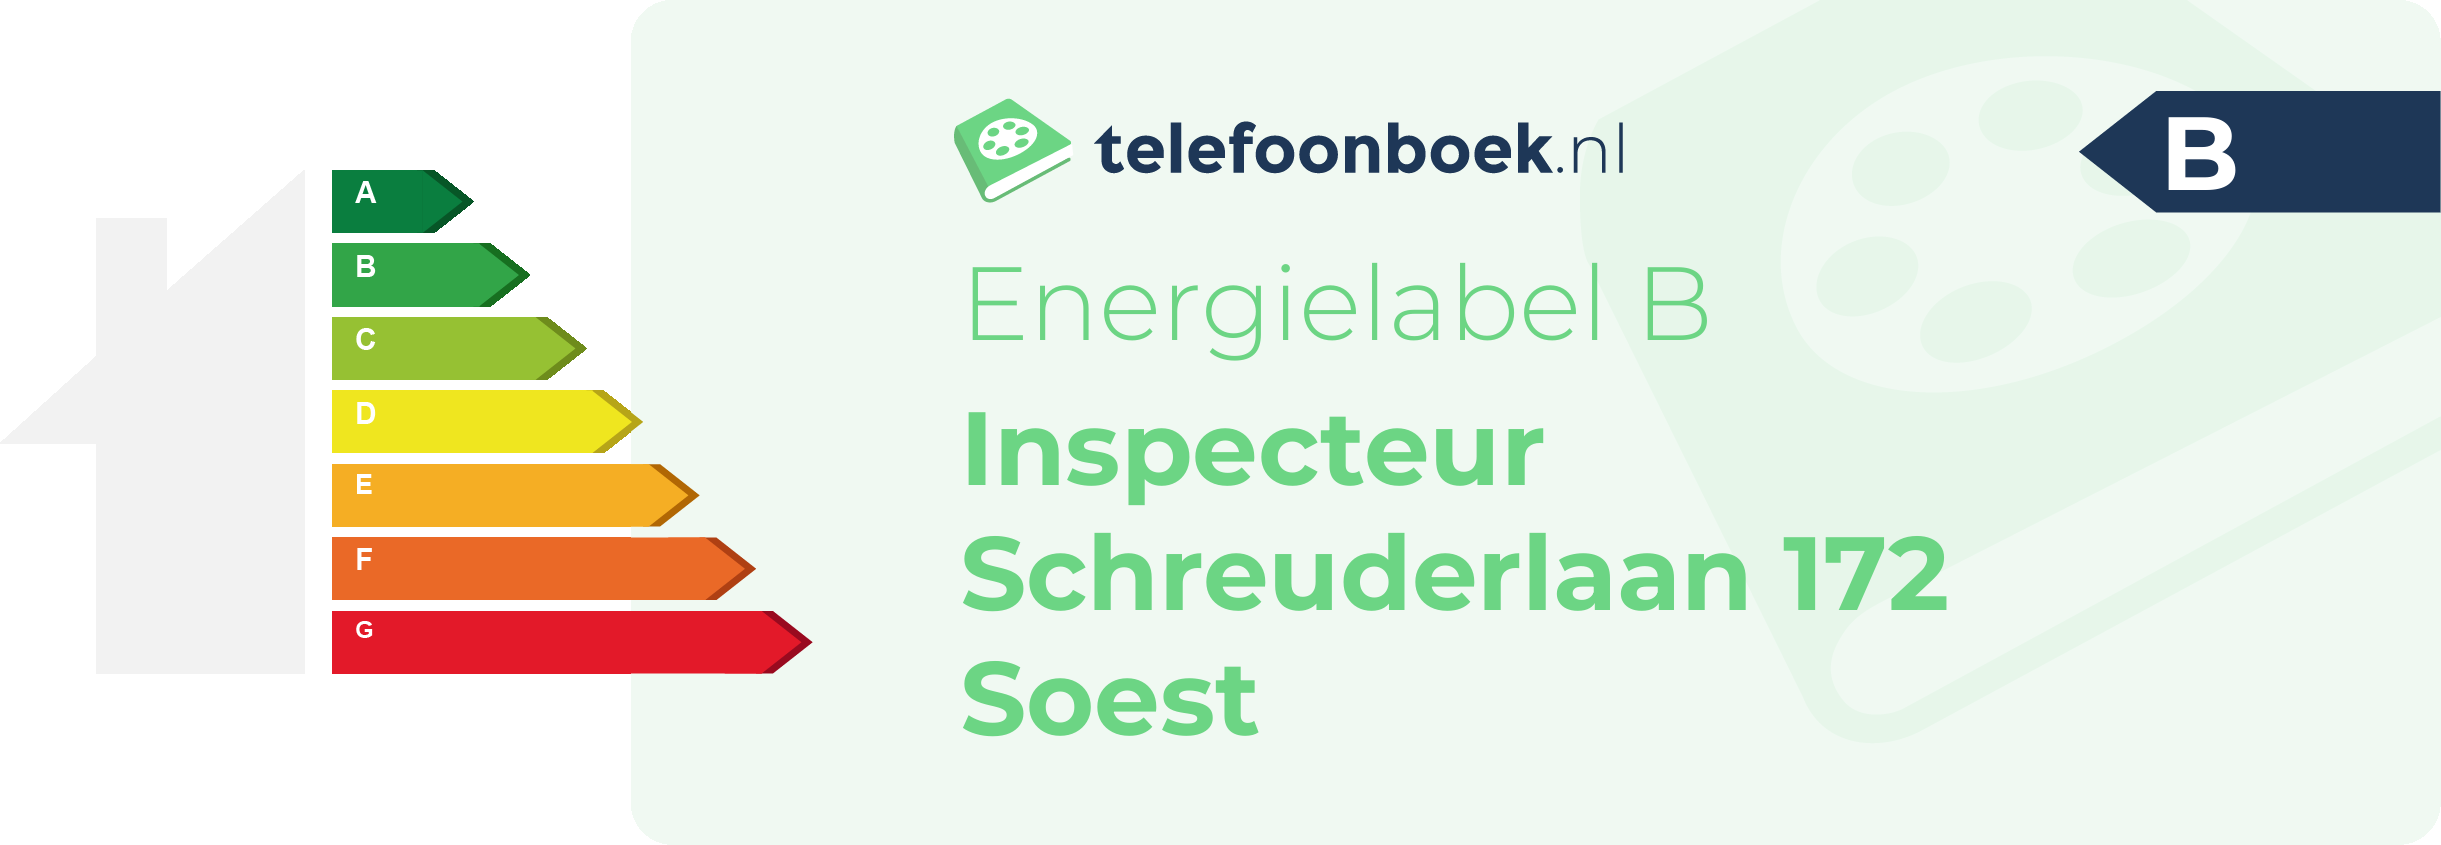 Energielabel Inspecteur Schreuderlaan 172 Soest